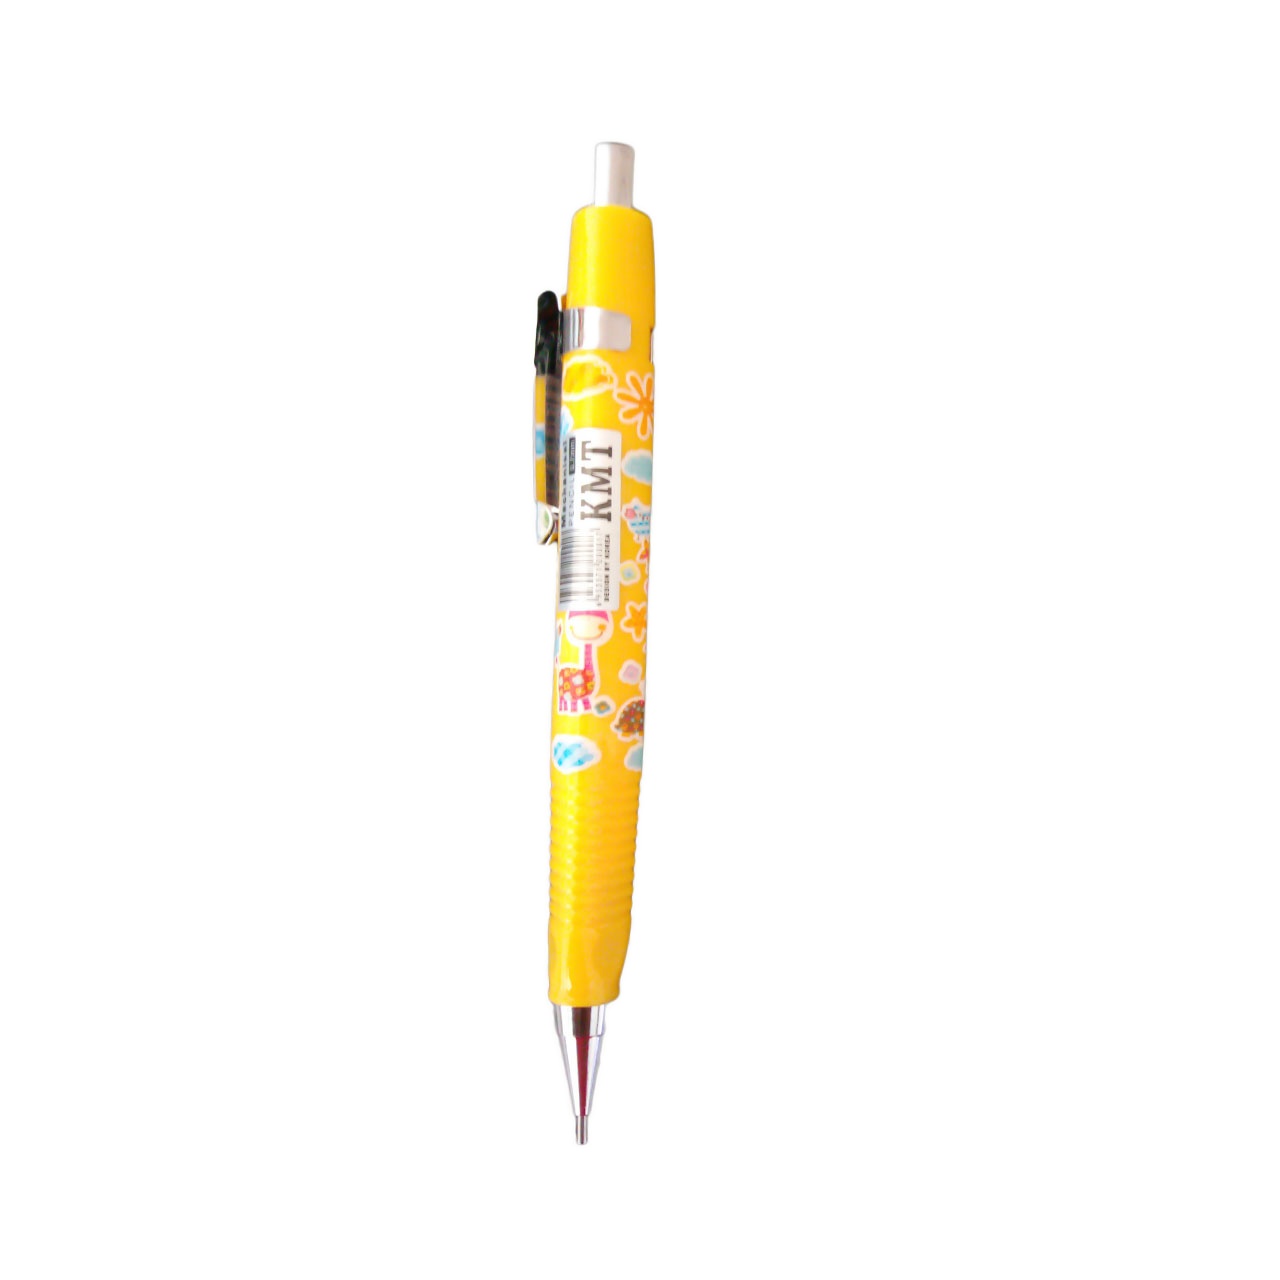 مداد نوکی 0.7 میلی متری کا ام تی کد 041